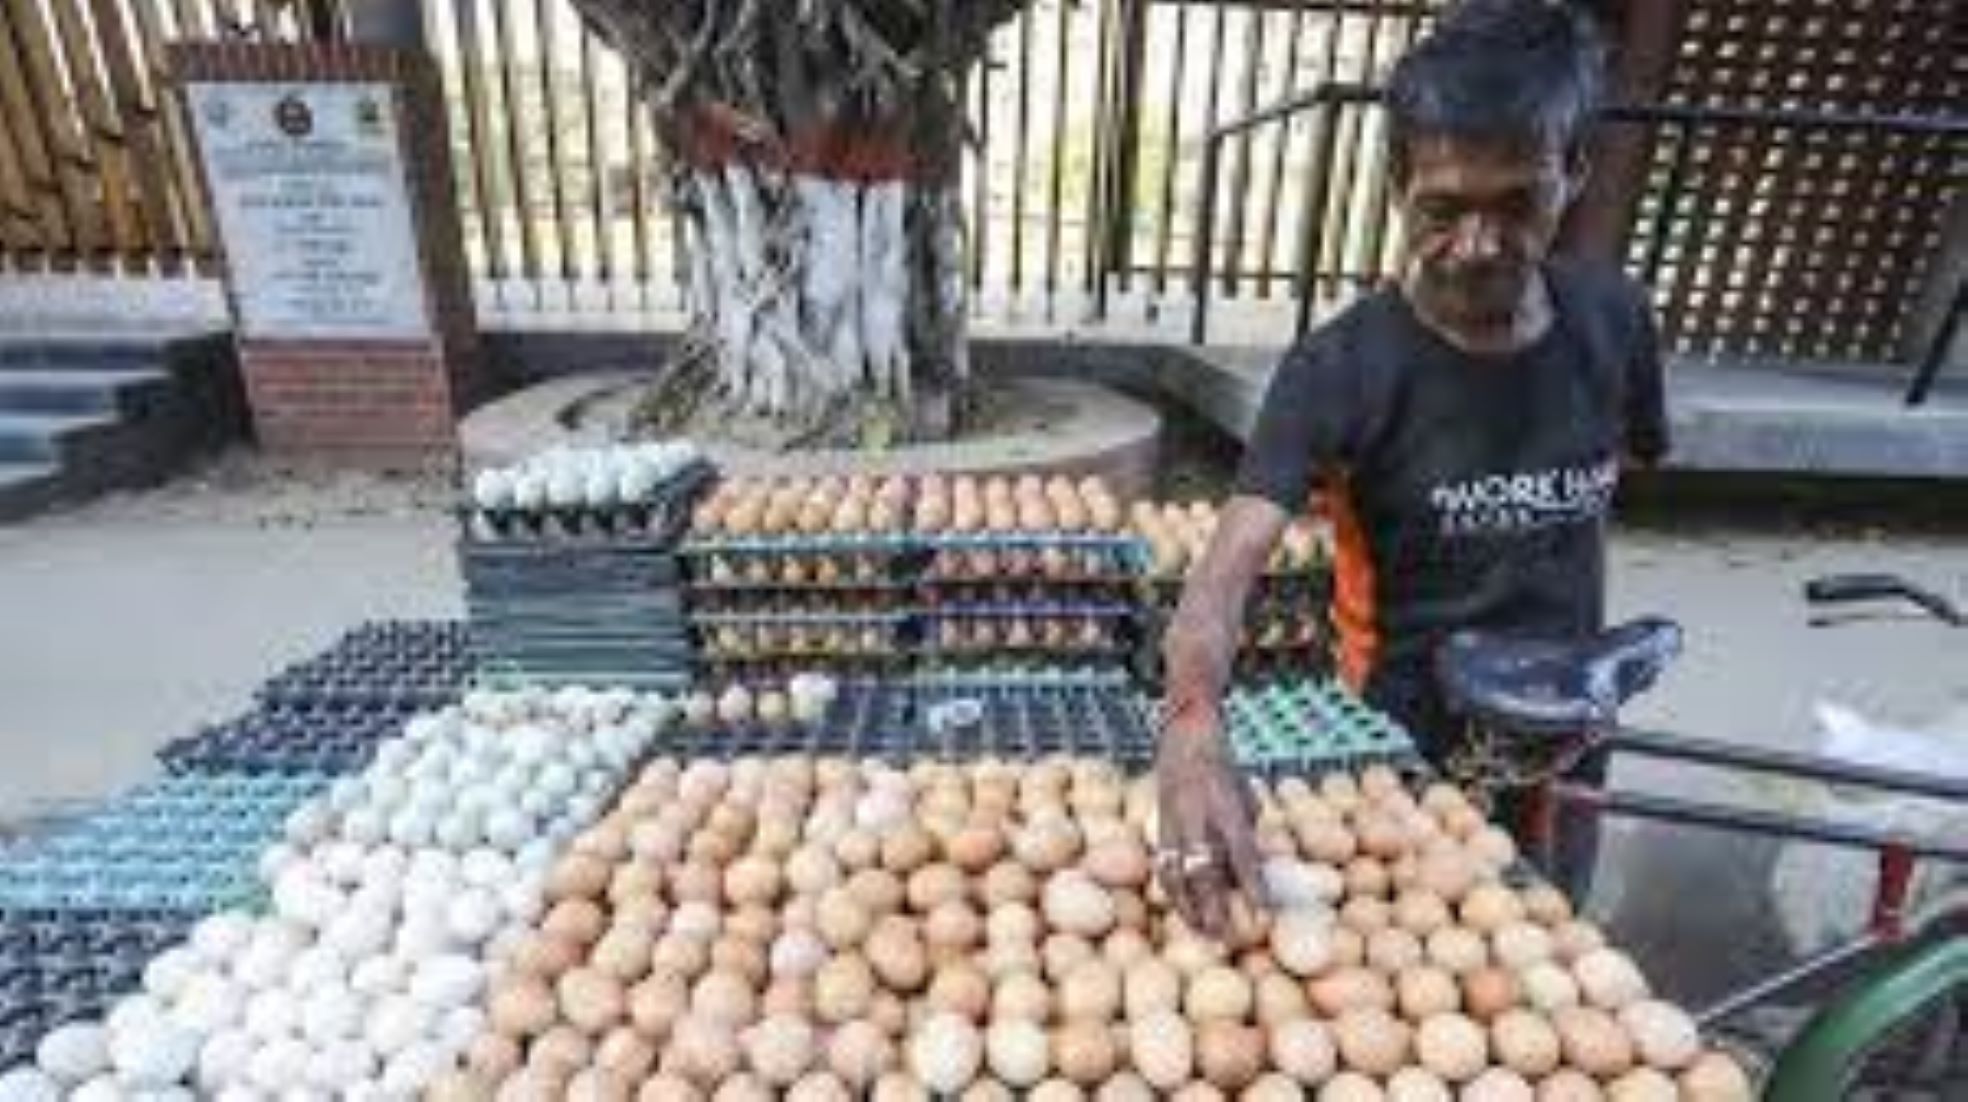 Bangladesh To Import 150 Million Eggs To Stabilise Market